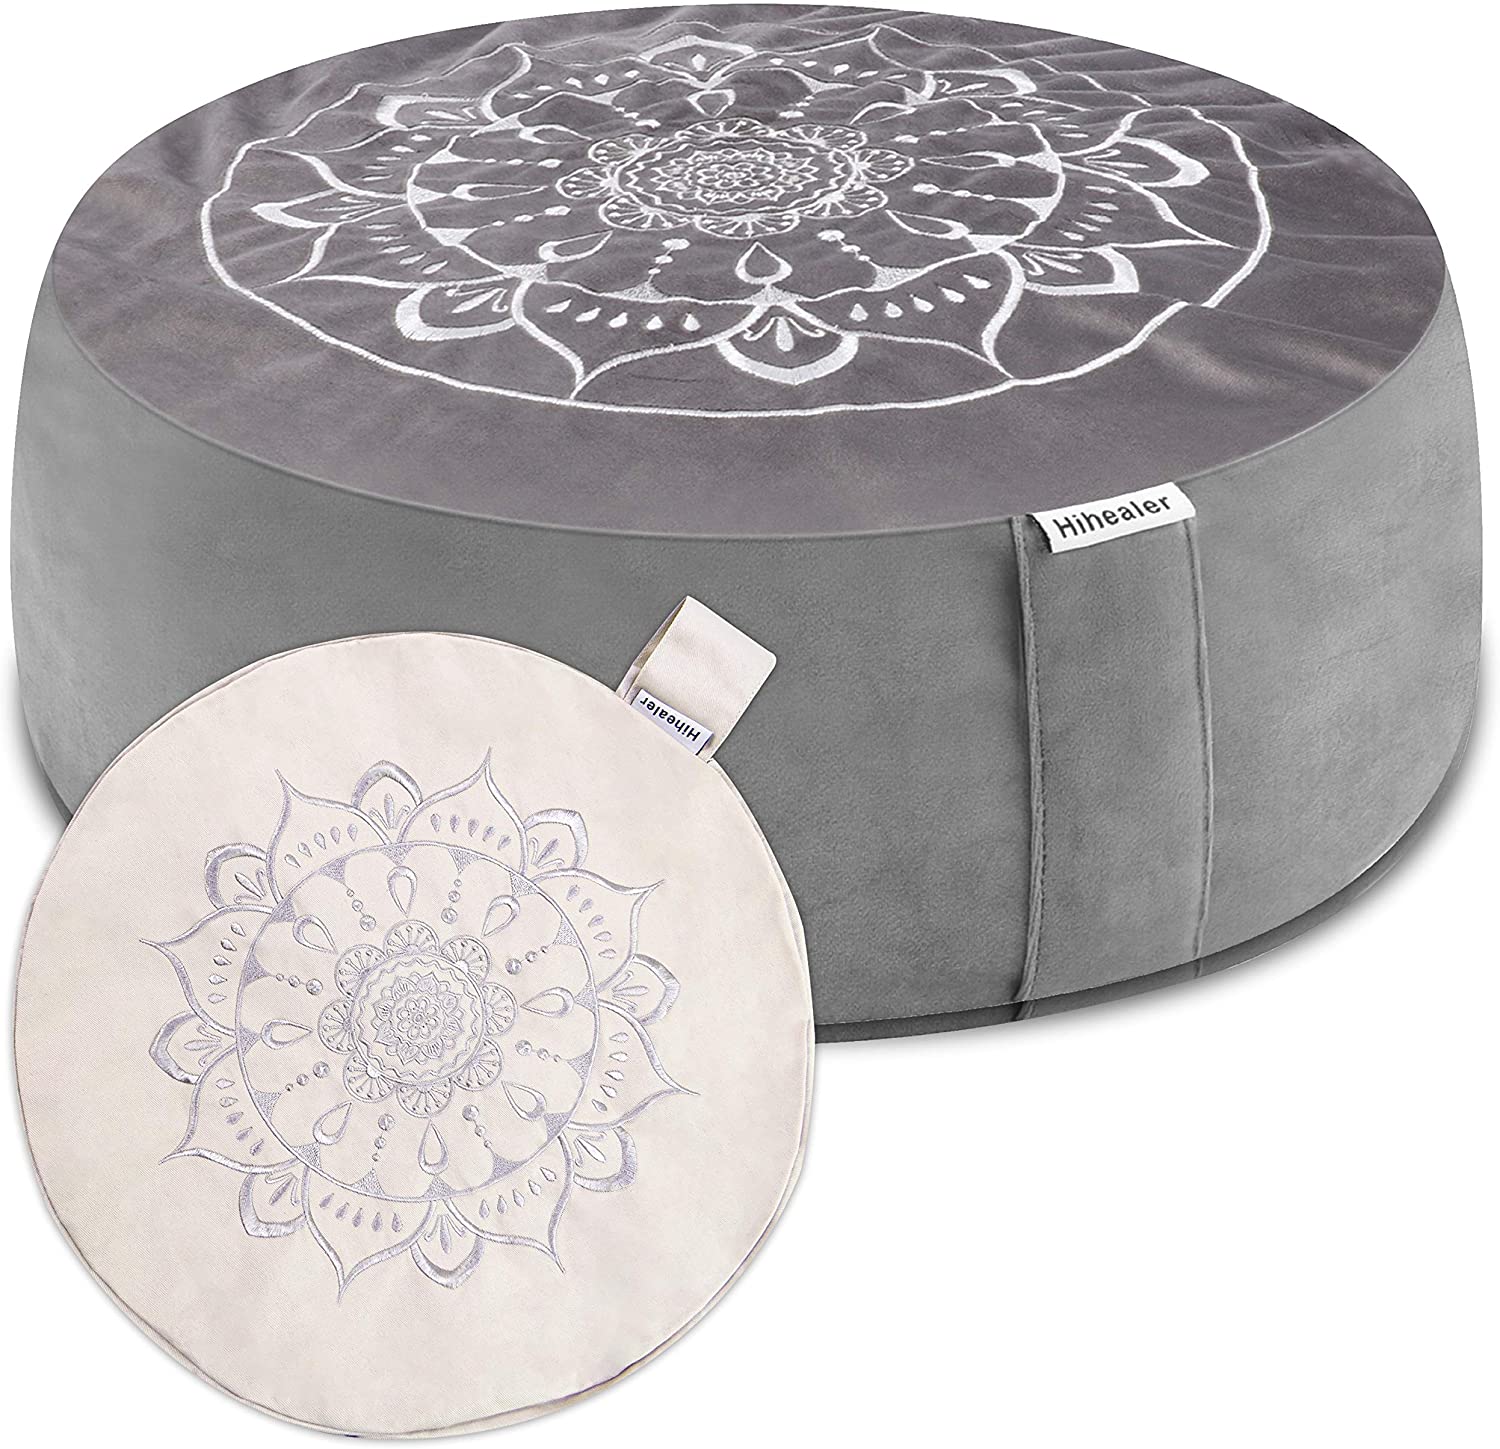 Hihealer Interchangeable Cotton & Velvet Covers Meditation Cushion